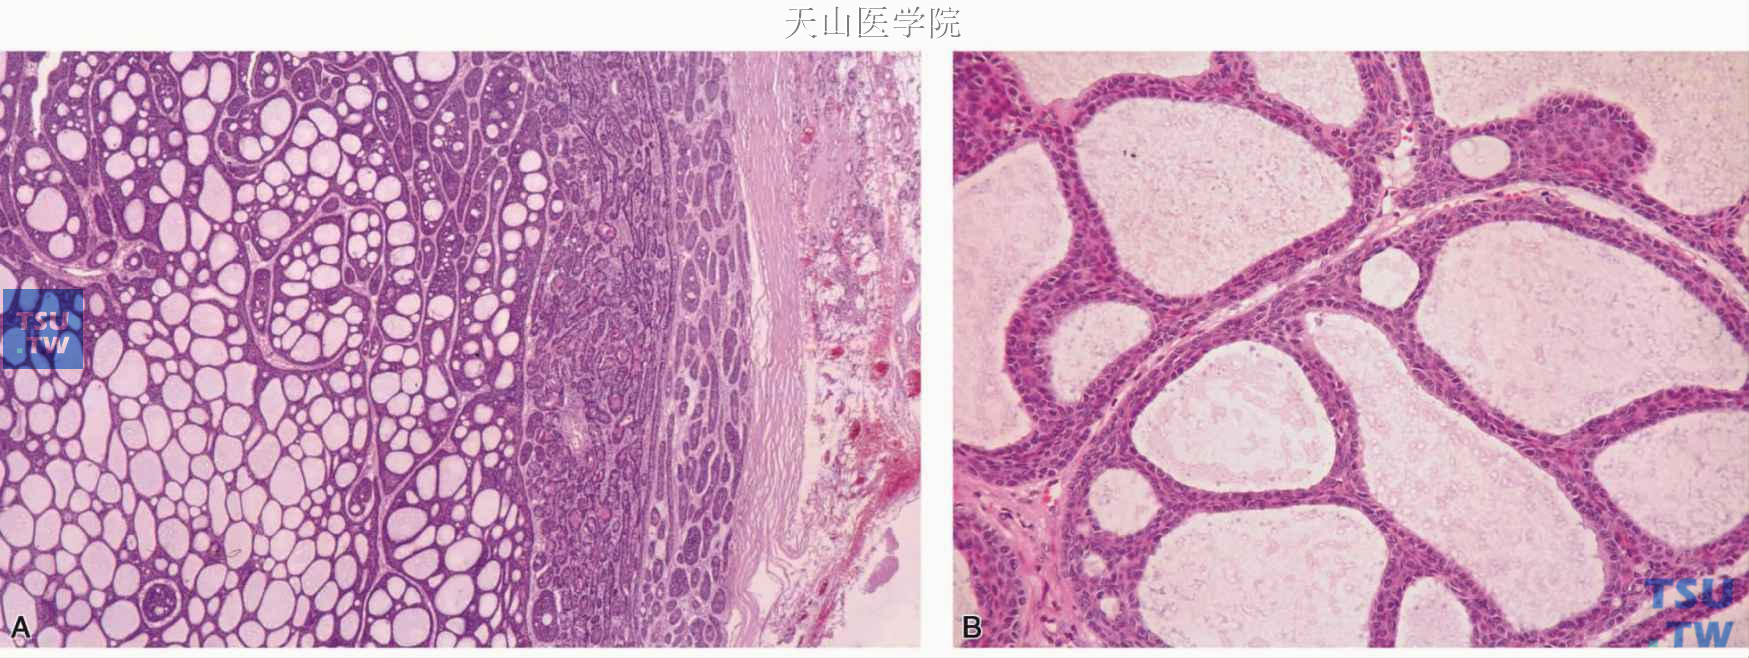 腺样囊性型基底细胞腺瘤  A.肿瘤细胞以筛孔样结构为主，包膜完整；B.筛孔样结构的高倍观